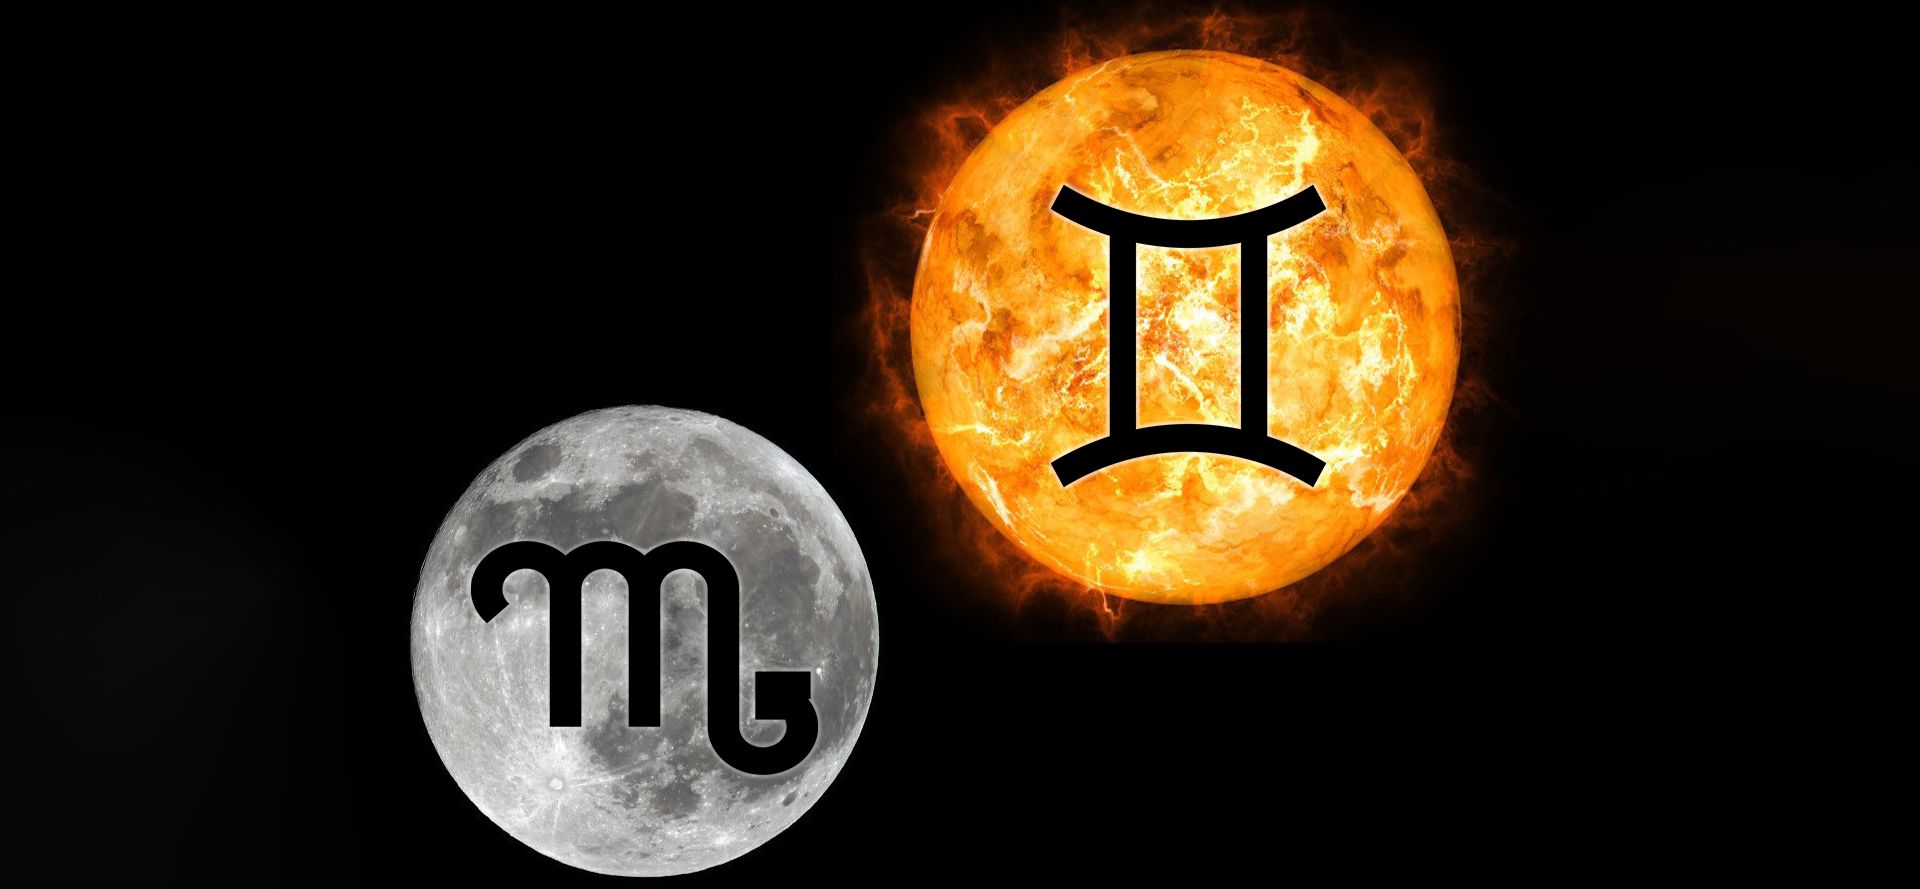 Gemini in sun Scorpio in moon.